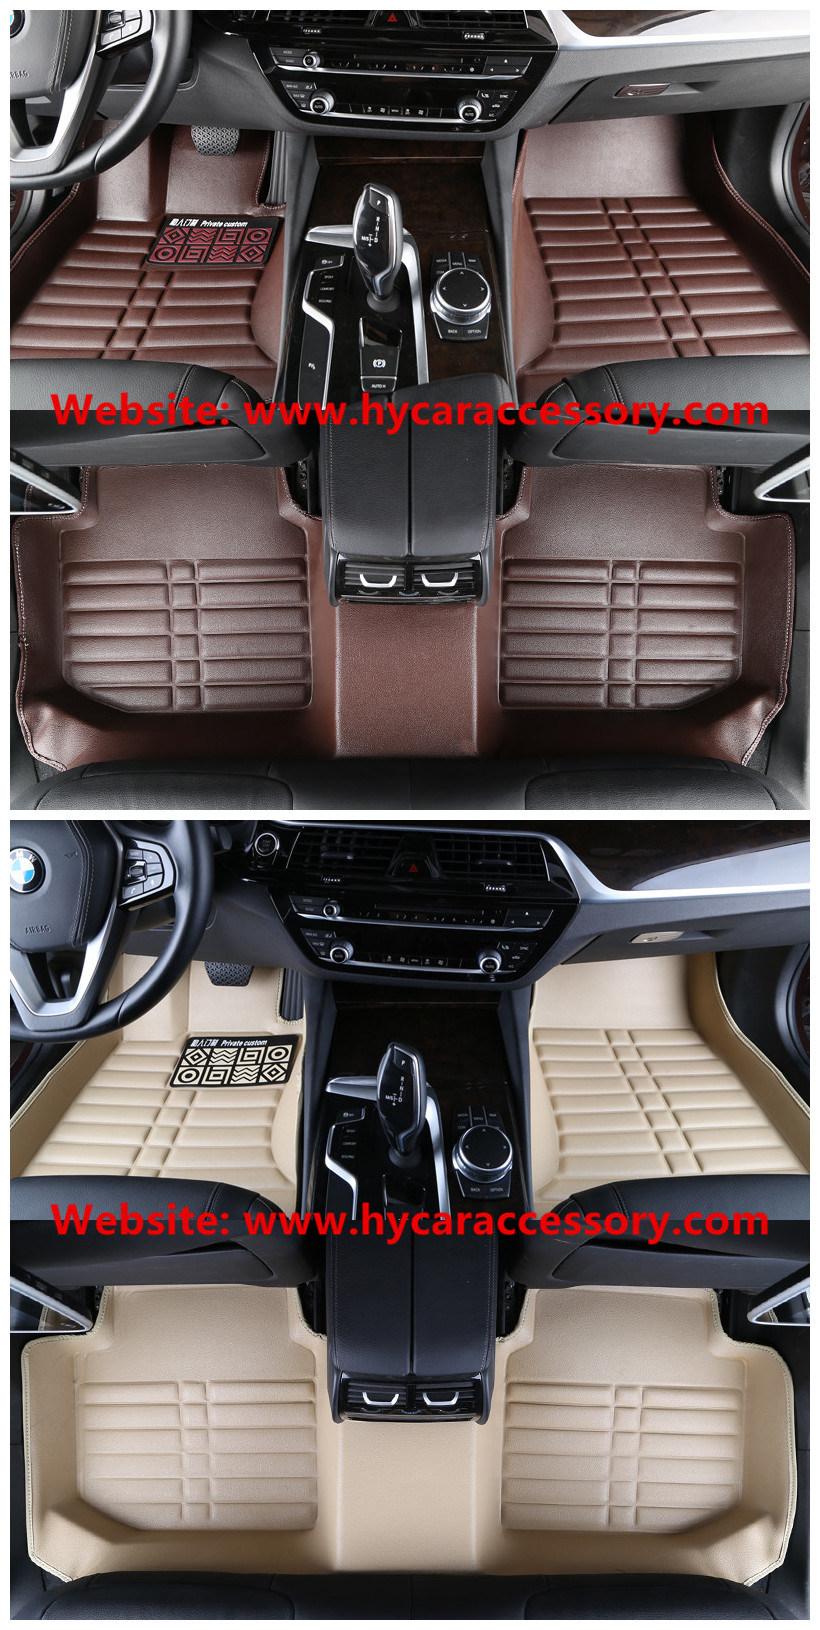 Hot Sale Waterproof Wear Leather 5D Anti Slip Car Carpet